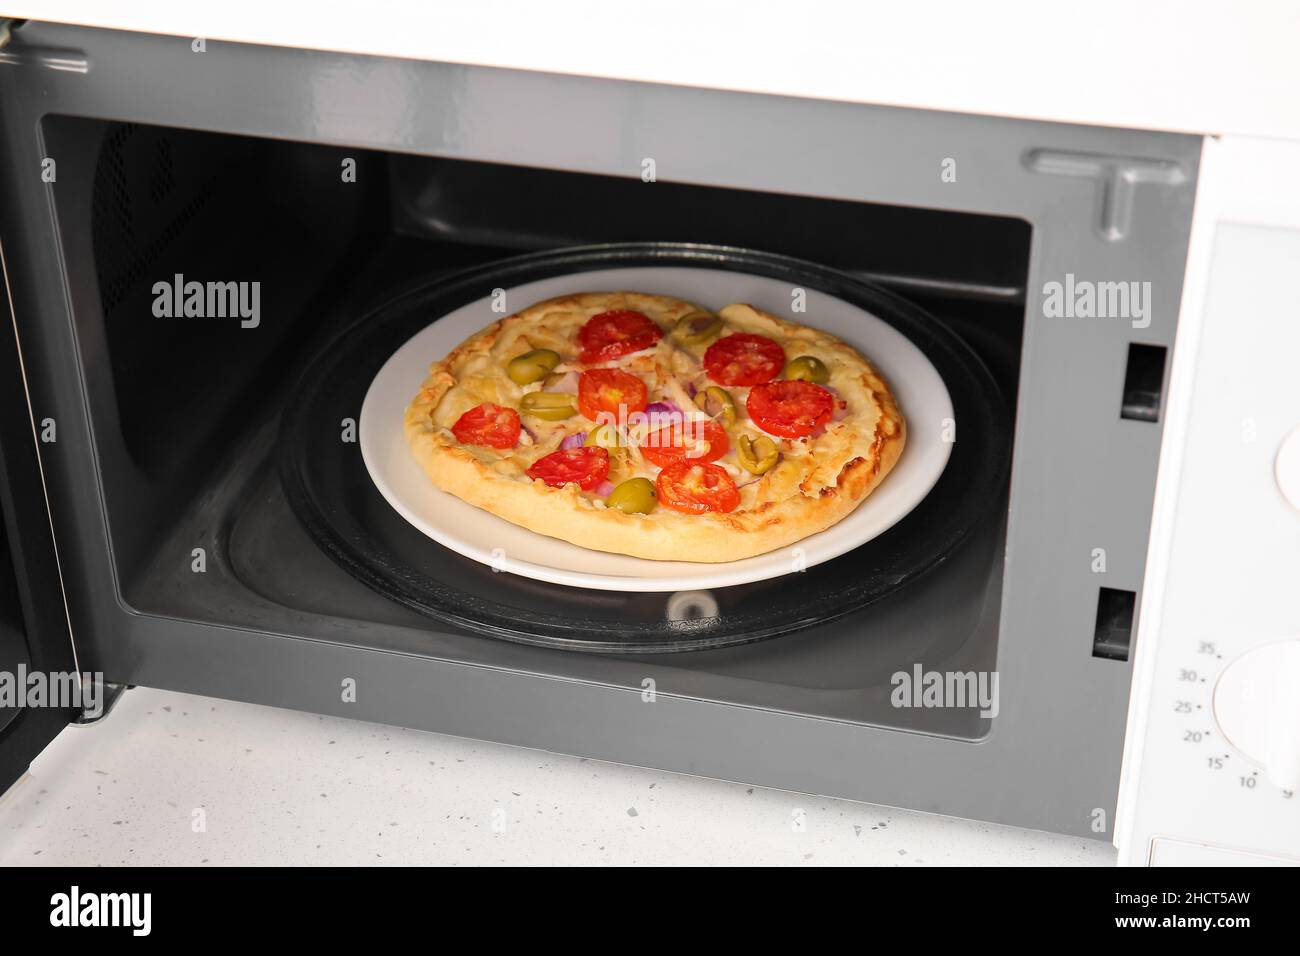 Piatto con pizza nel moderno forno a microonde sul banco, primo piano Foto  stock - Alamy